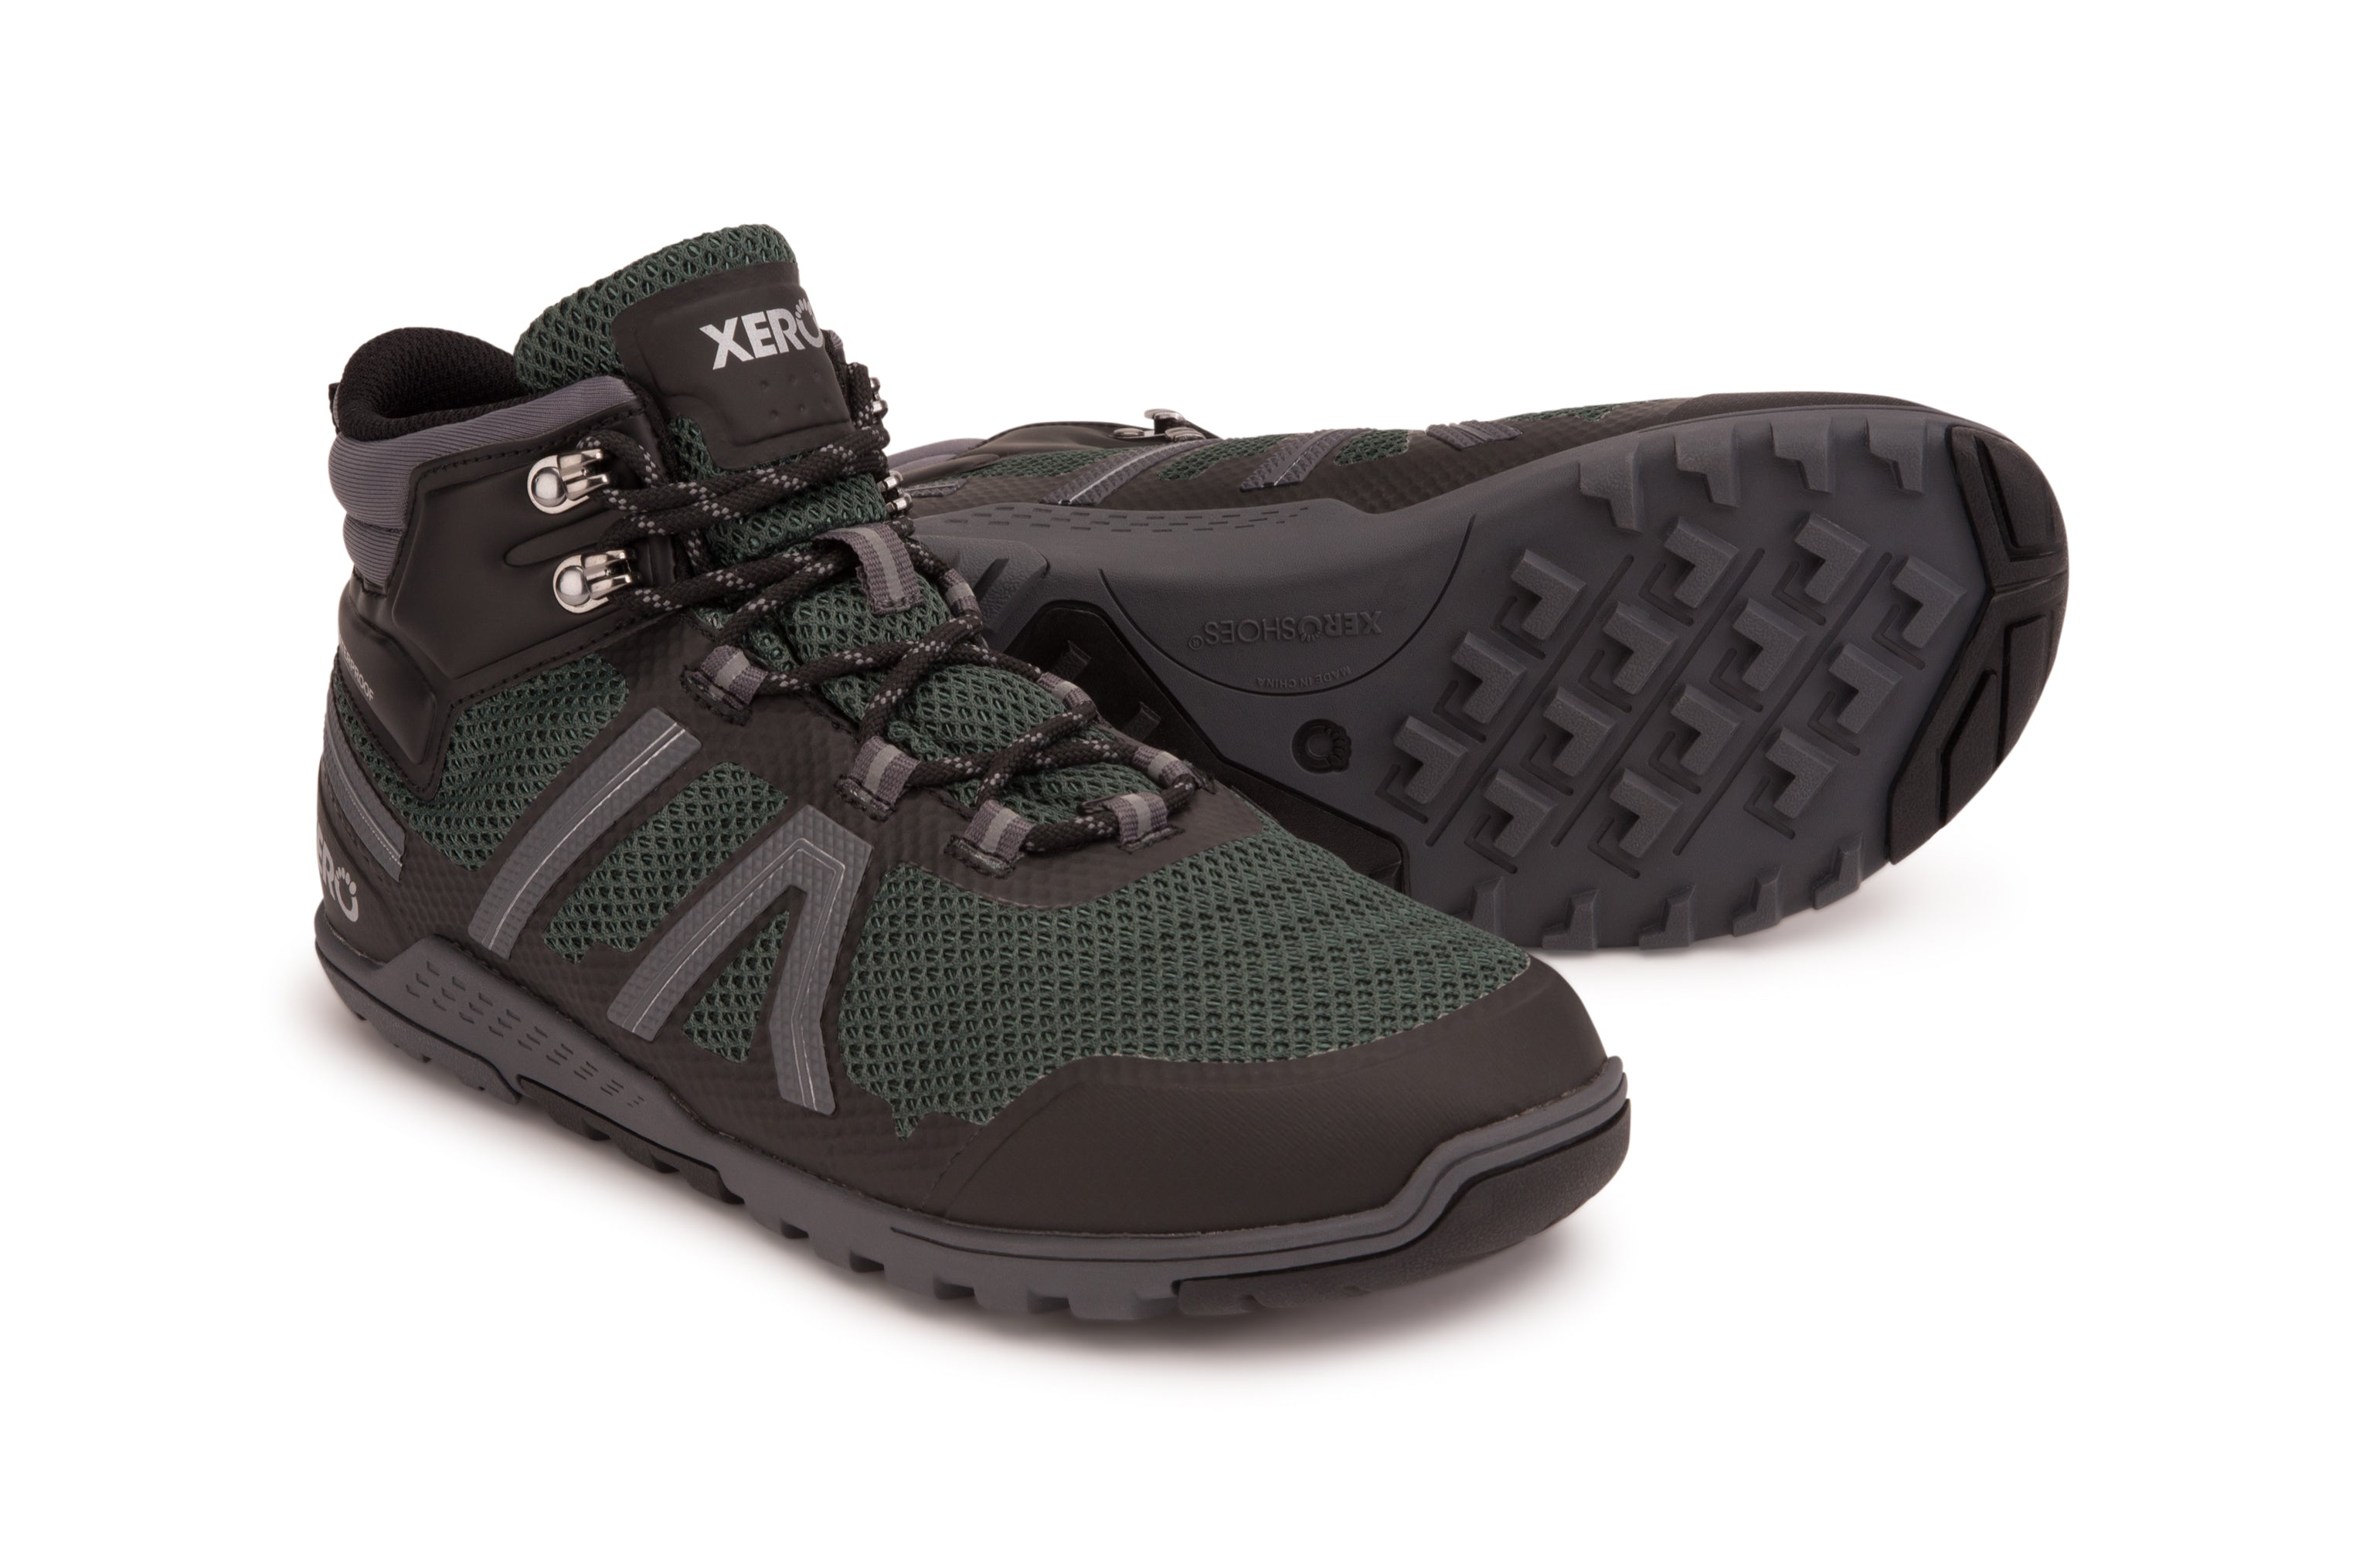 Xero Shoes Xcursion Fusion barfods støvler til mænd i farven spruce, par